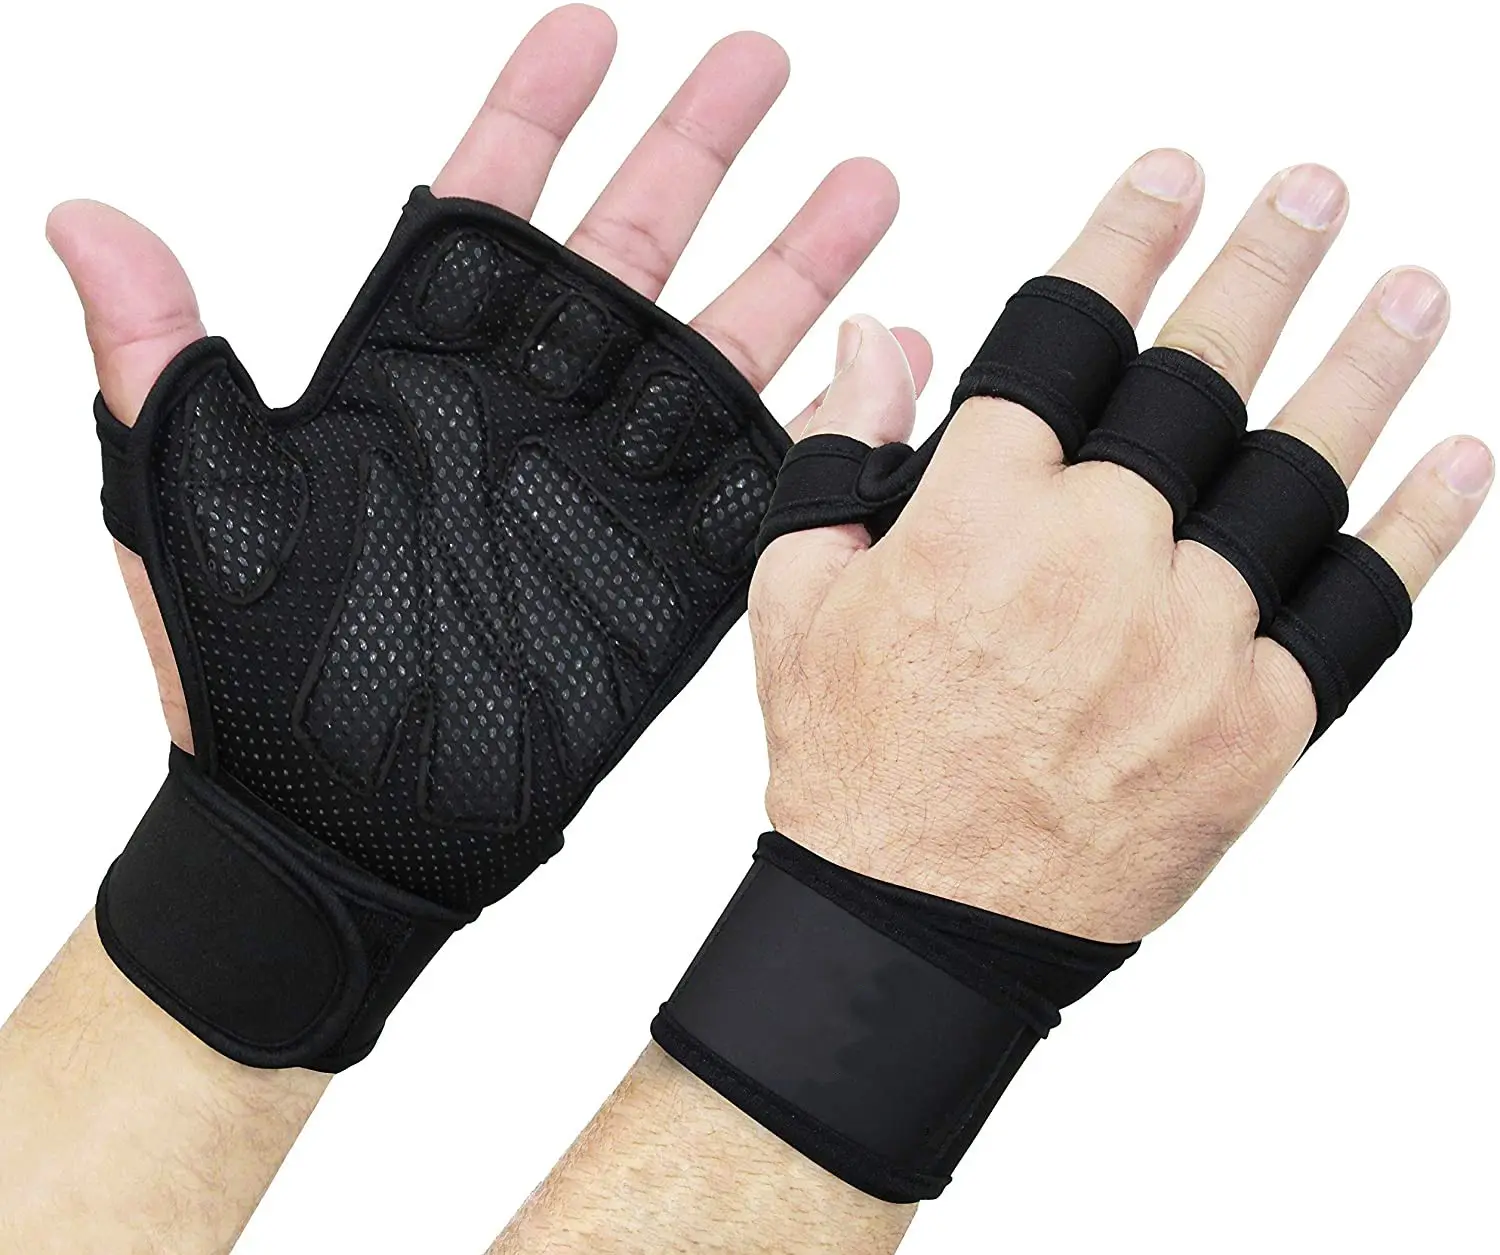 ถุงมือยกน้ำหนักสำหรับเล่นกีฬายิมถุงมือออกกำลังกายพร้อมเข็มขัดพยุงข้อมือ